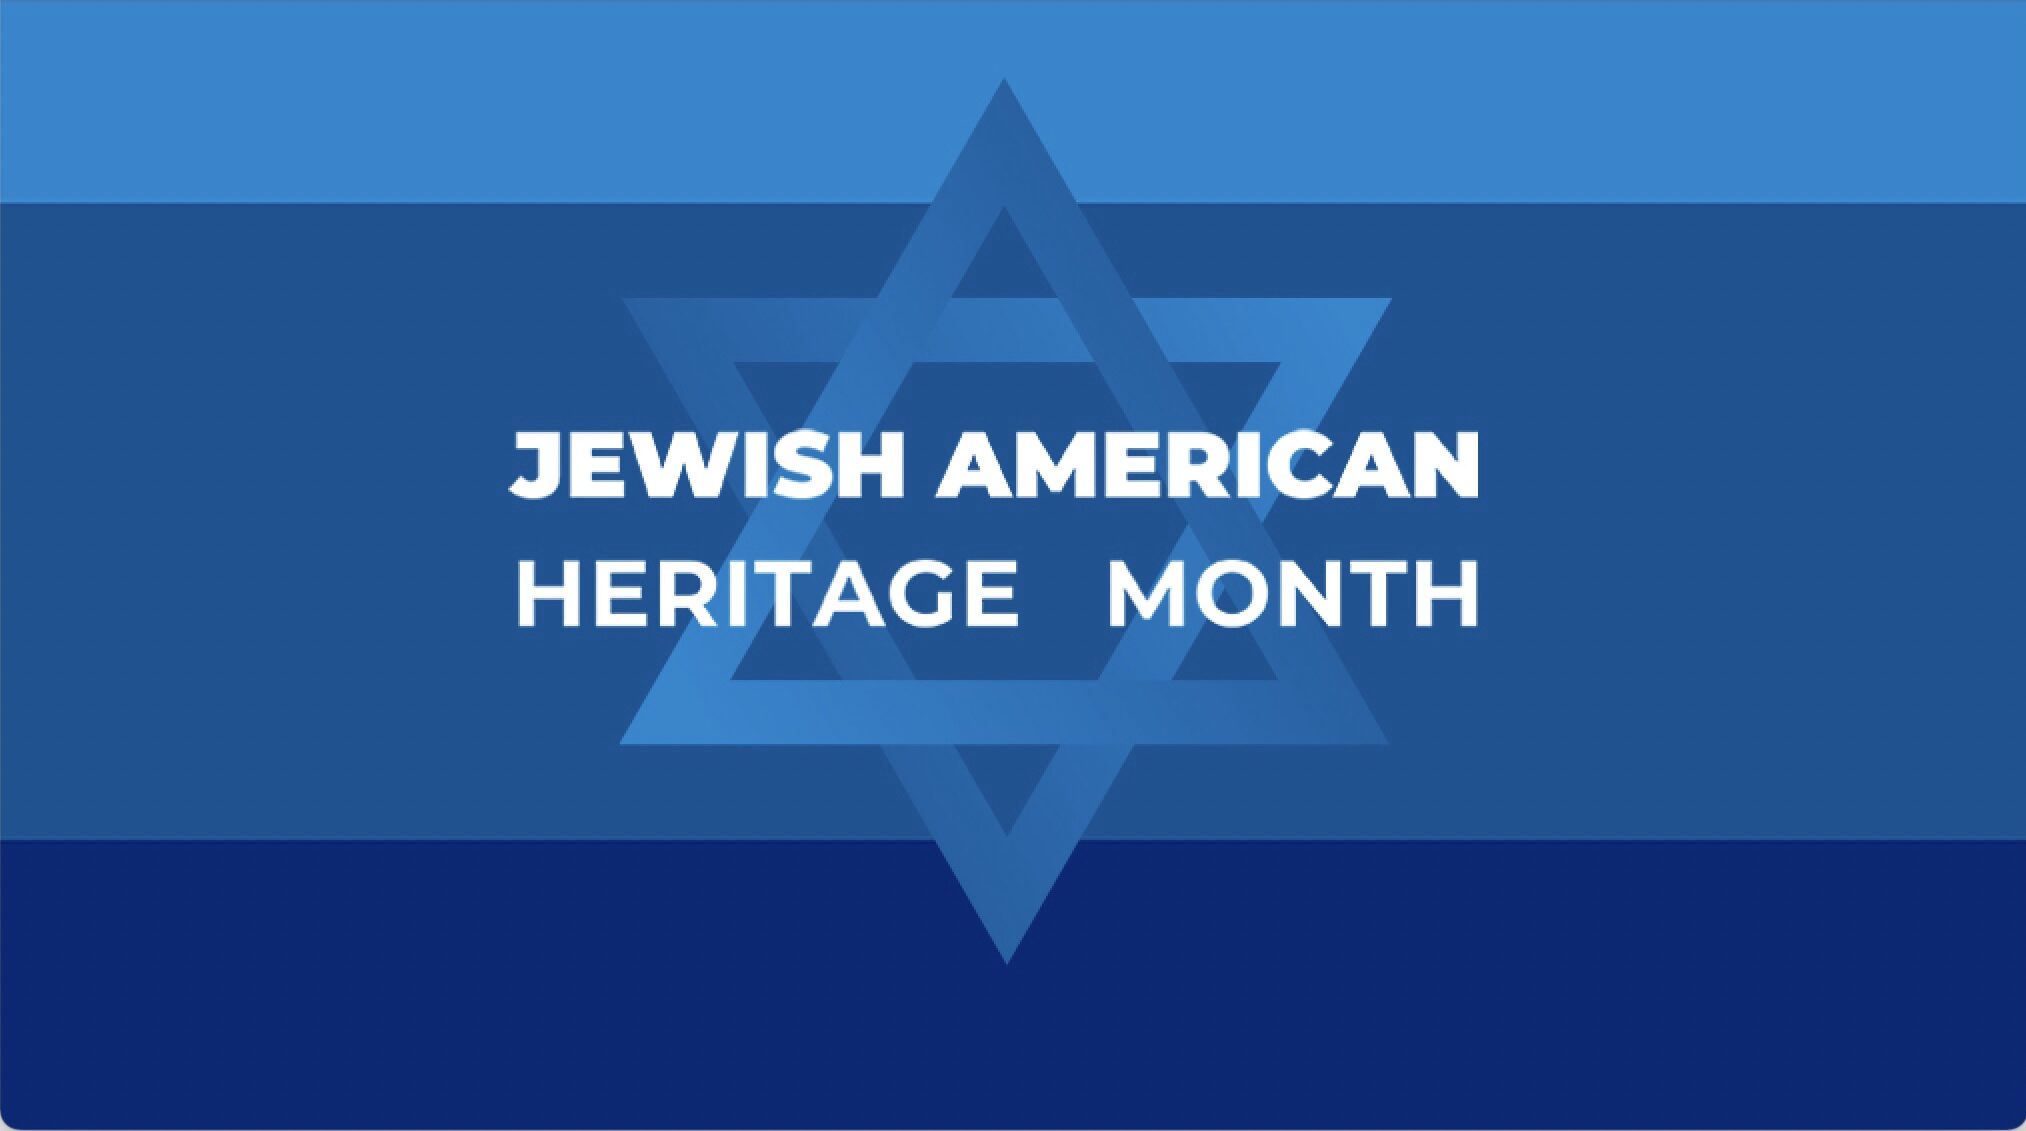 APS: WL чествует нашу еврейско-американскую общину